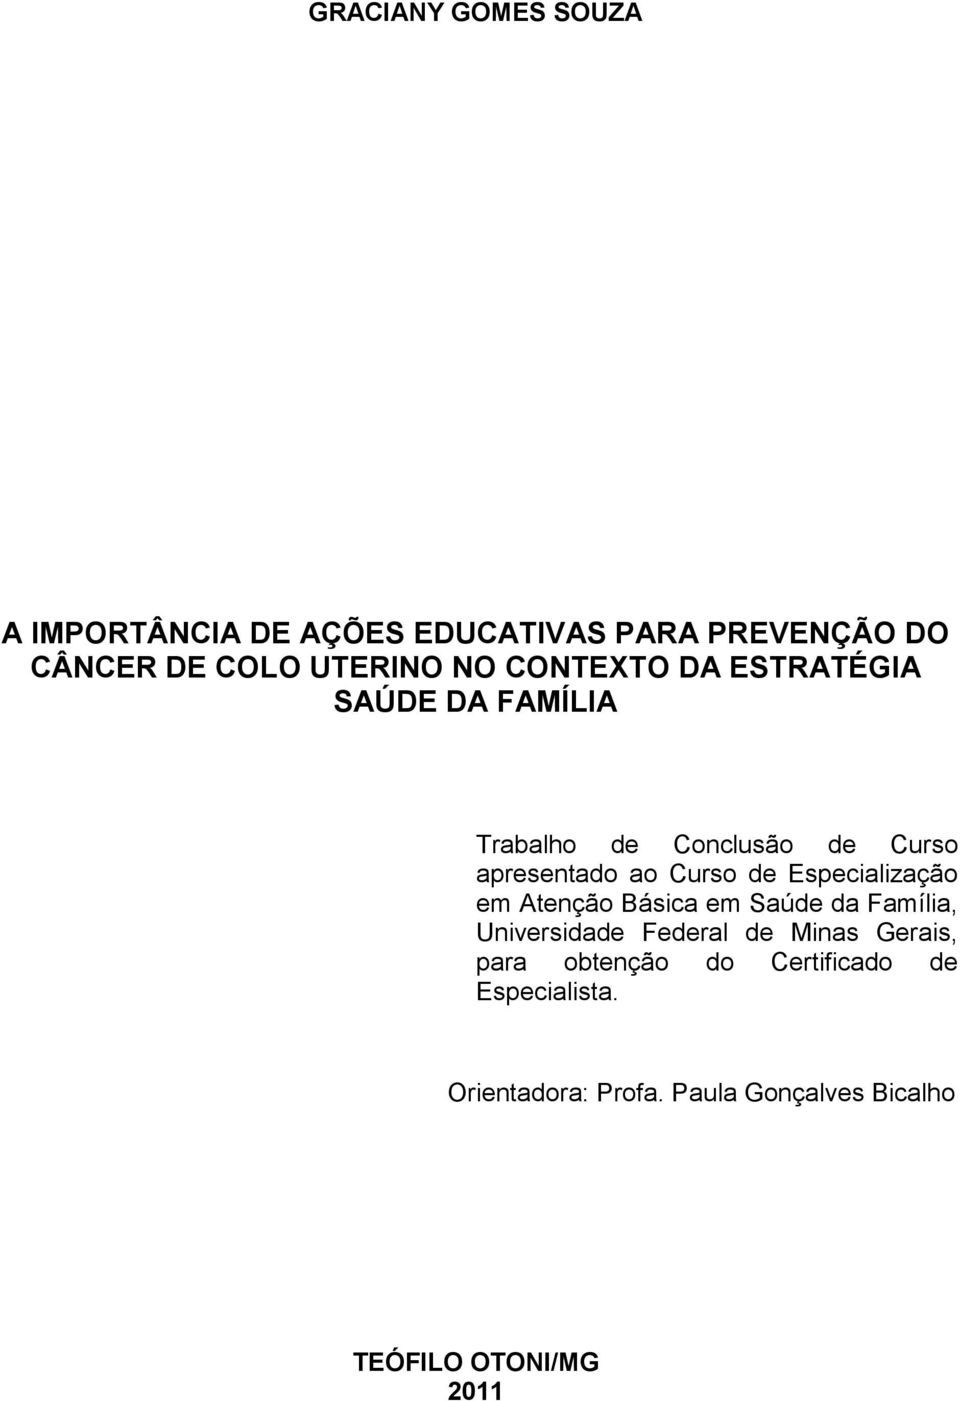 Especialização em Atenção Básica em Saúde da Família, Universidade Federal de Minas Gerais, para